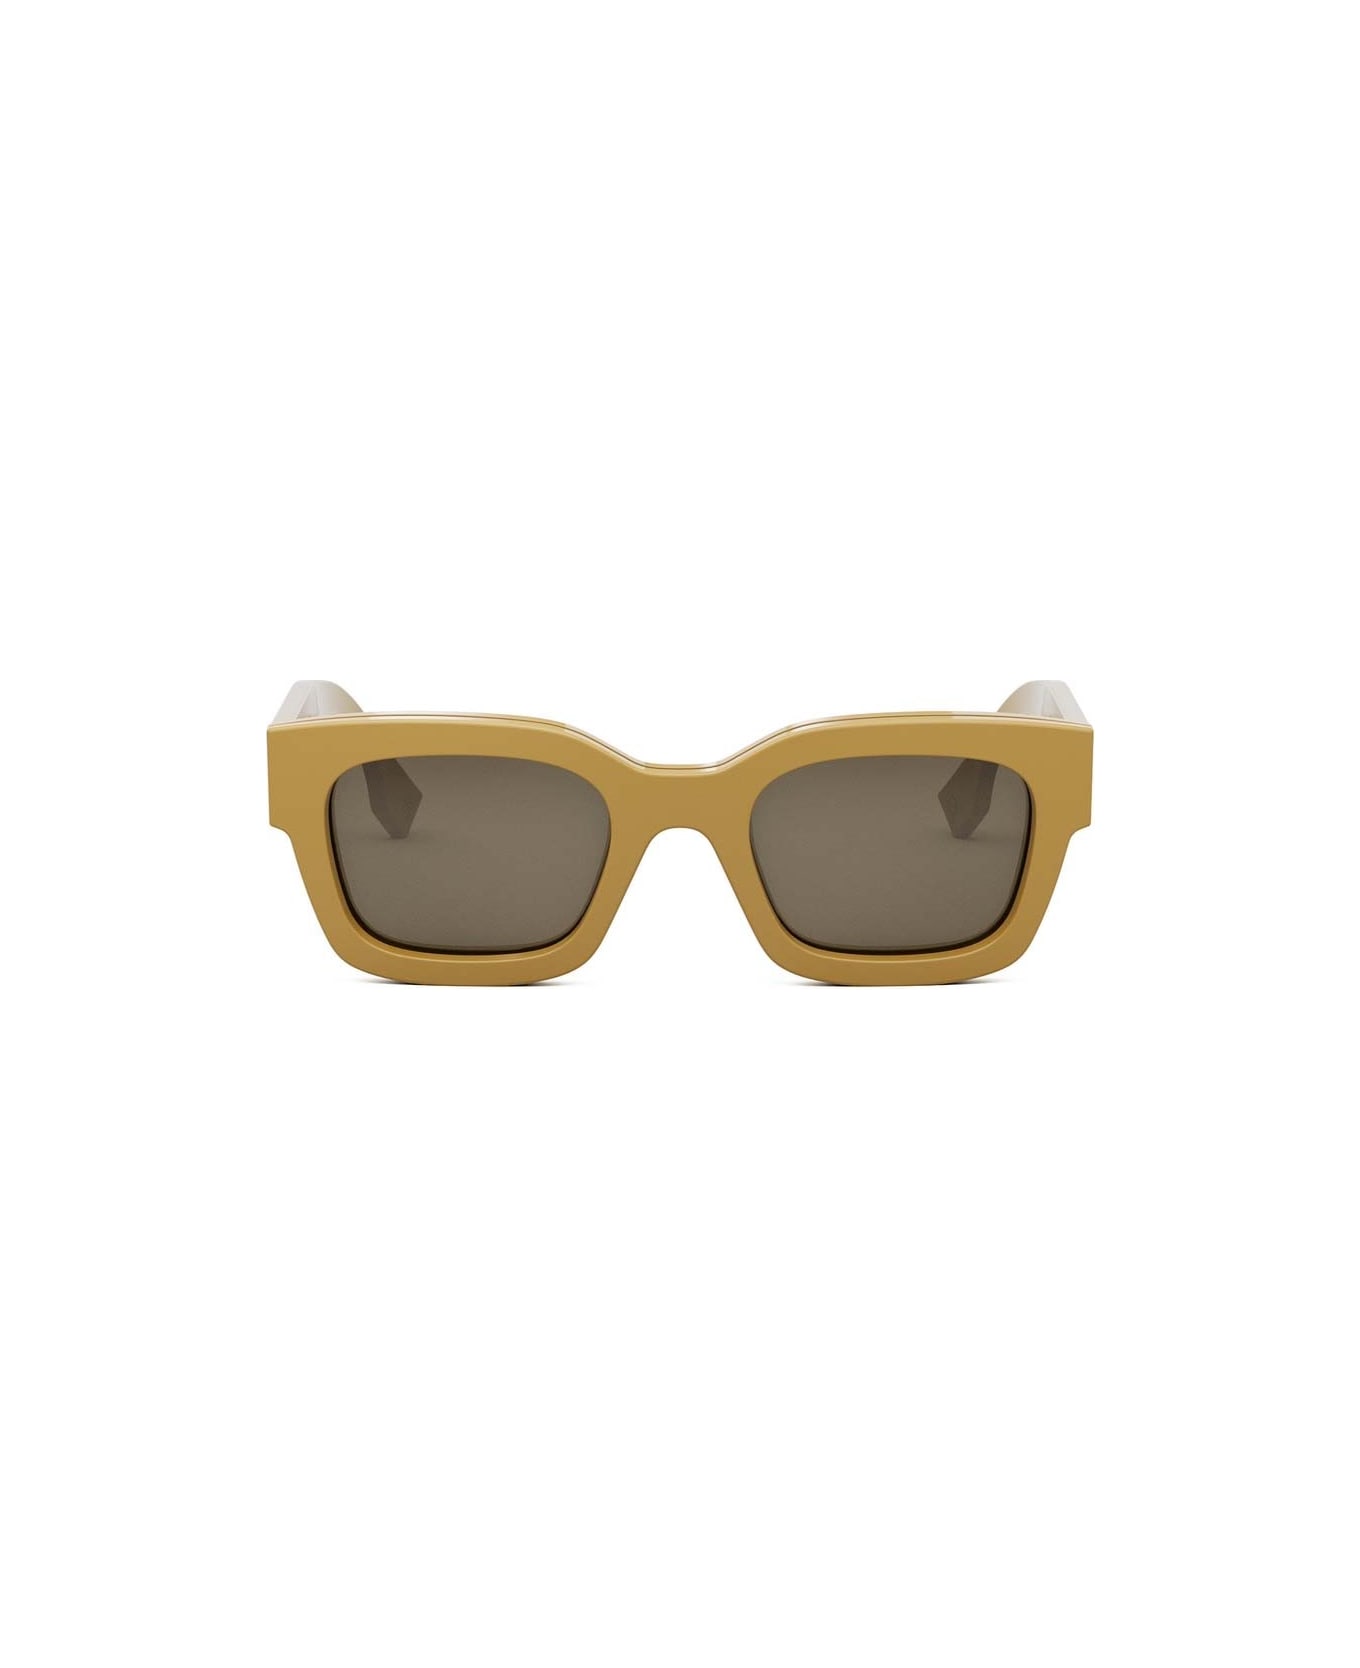 Fendi Eyewear Sunglasses - Giallo/Grigio サングラス